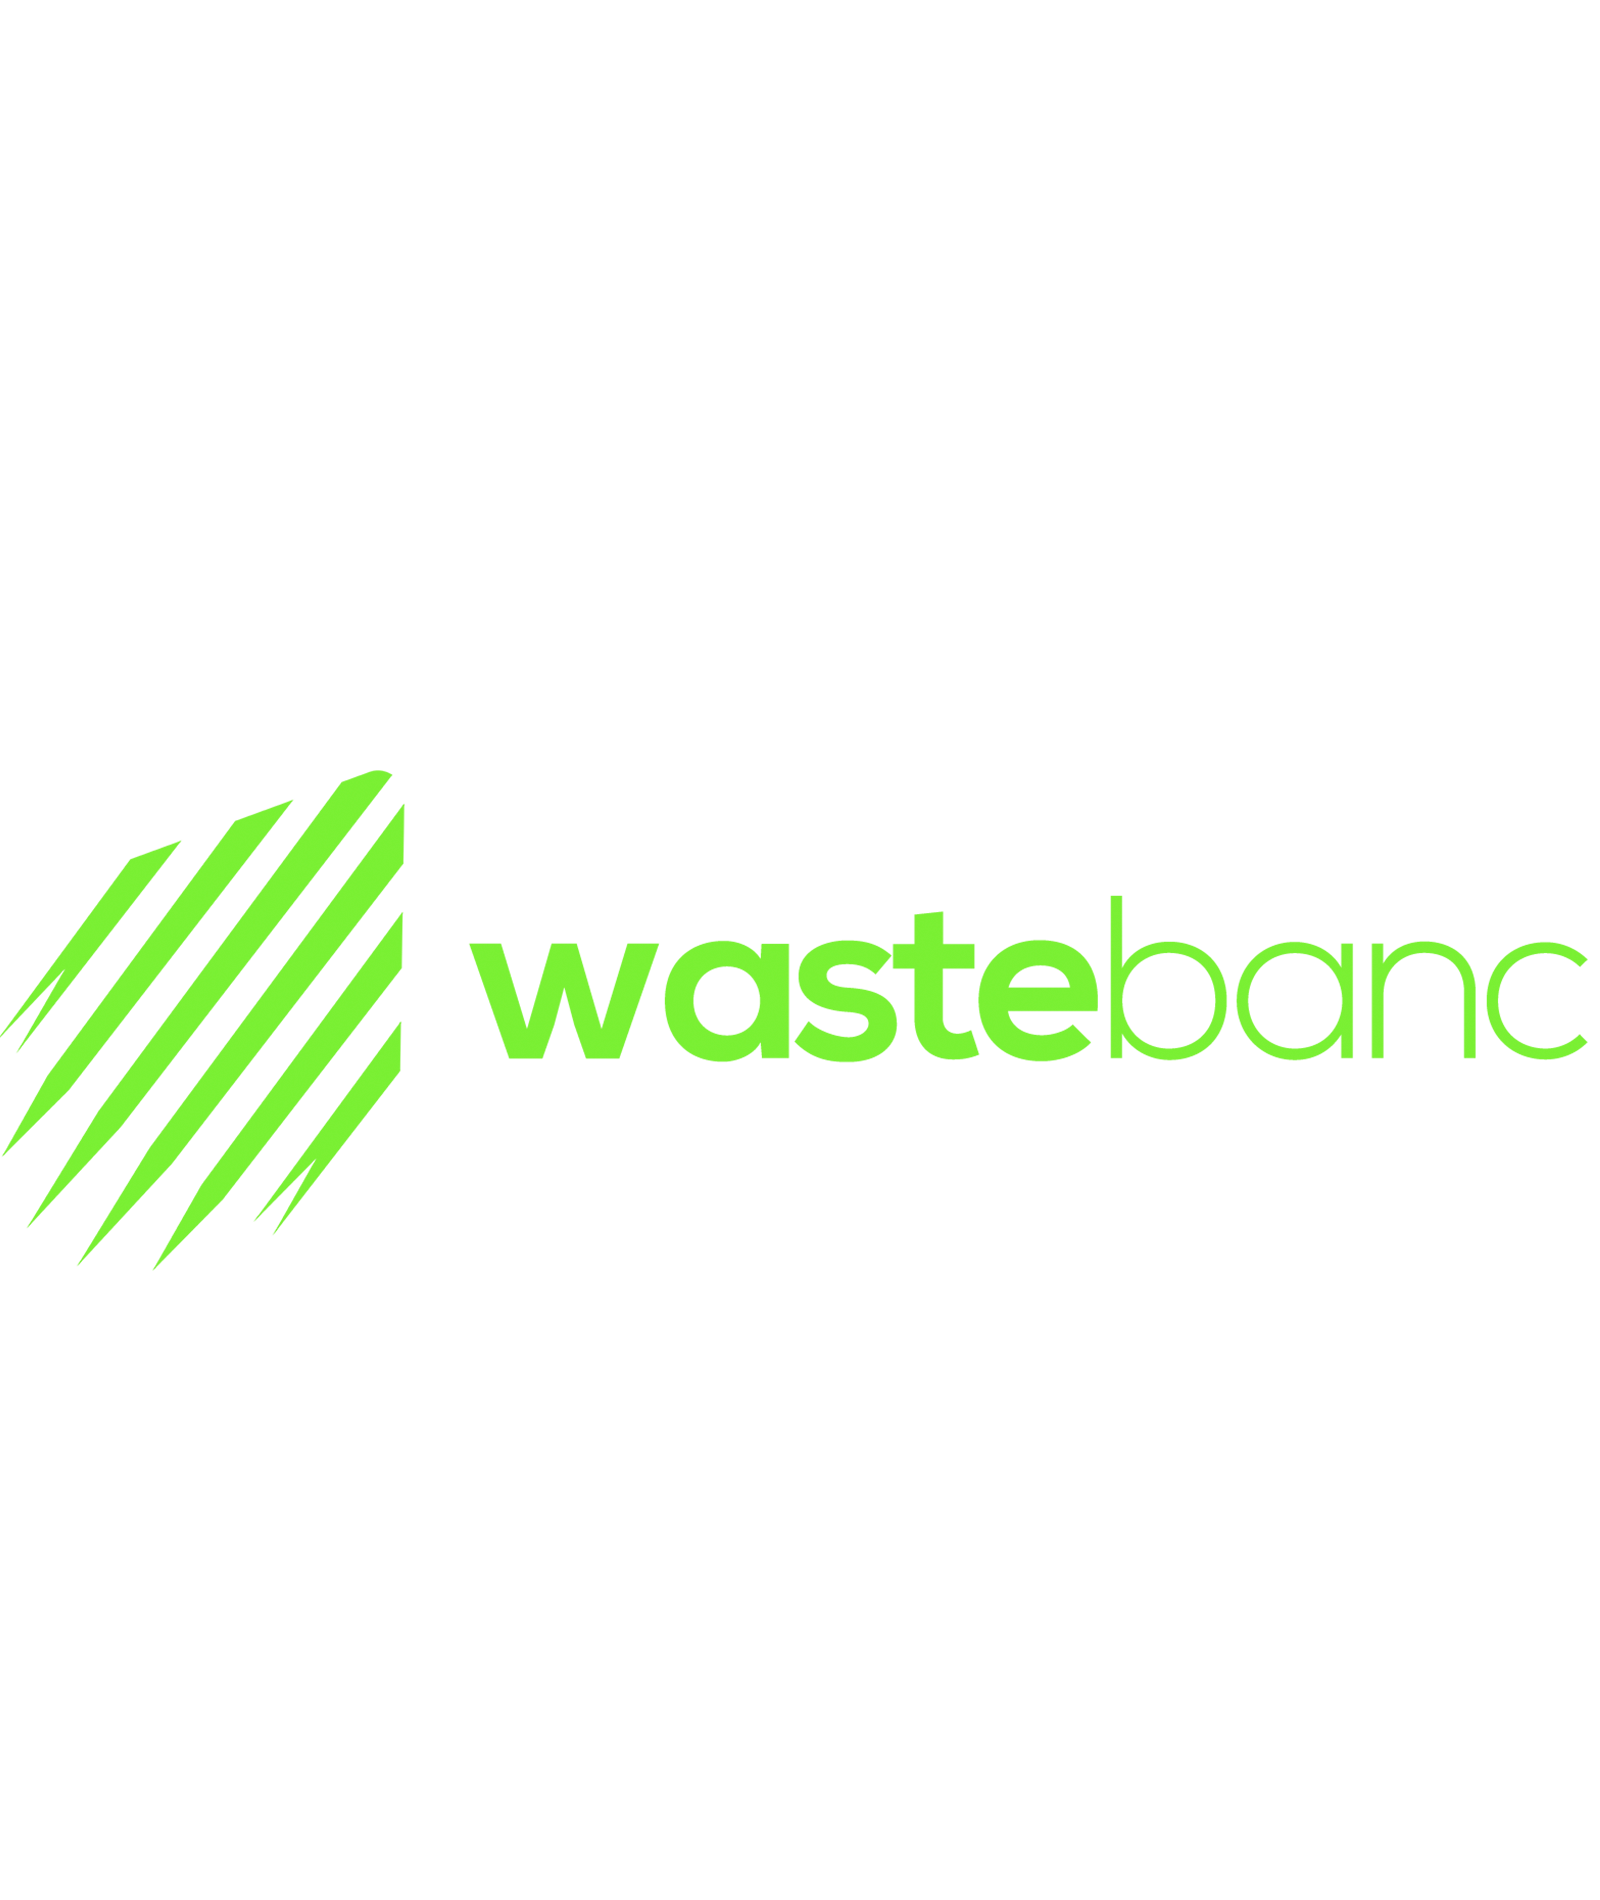 Wastebanc Blog